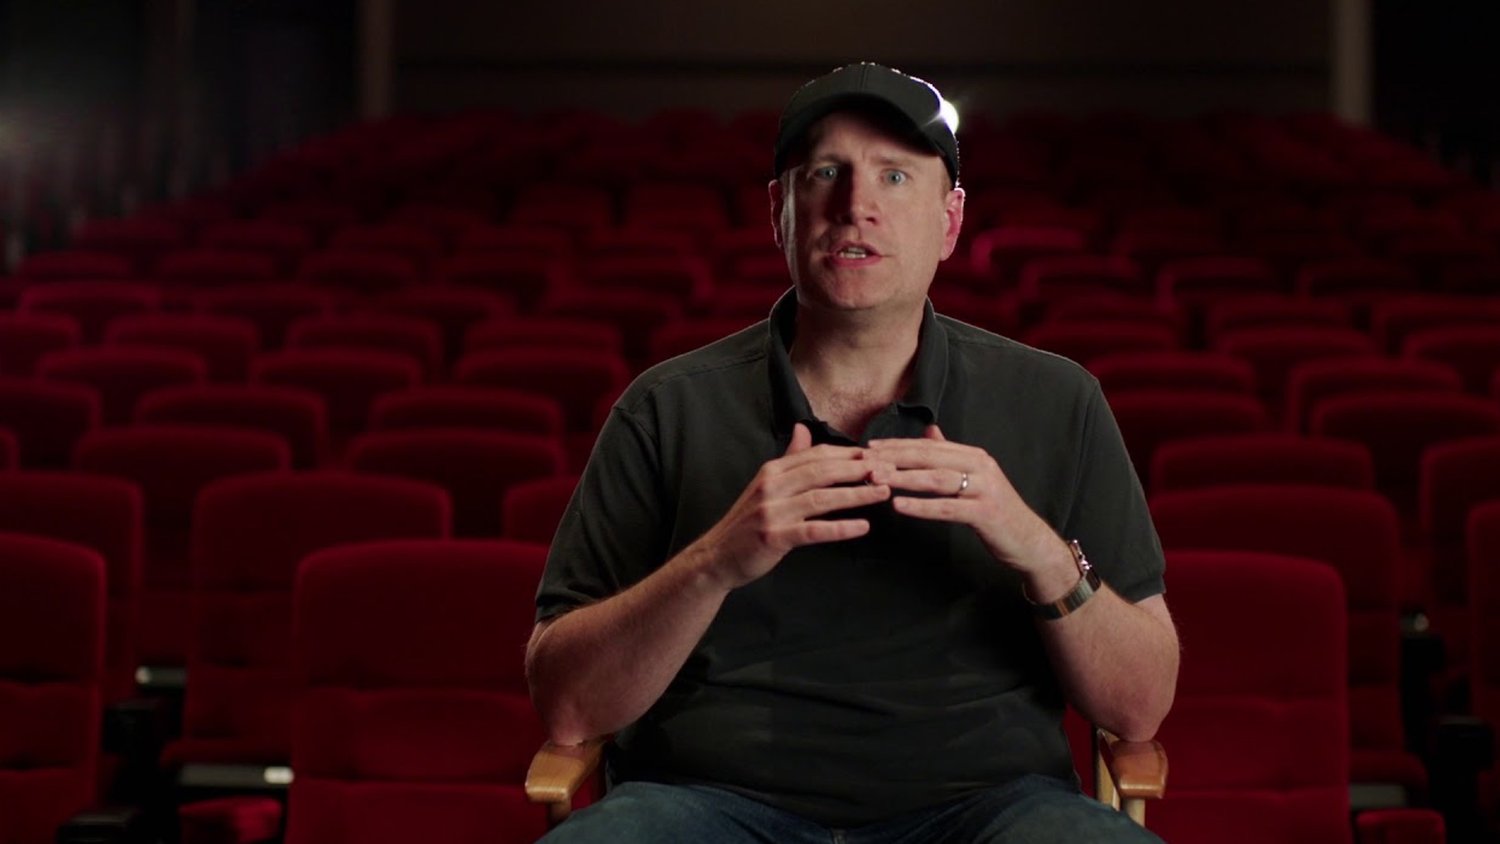 Le patron de Marvel Studios, Kevin Feige, répond au nouveau travail de James Gunn dans DC Studios